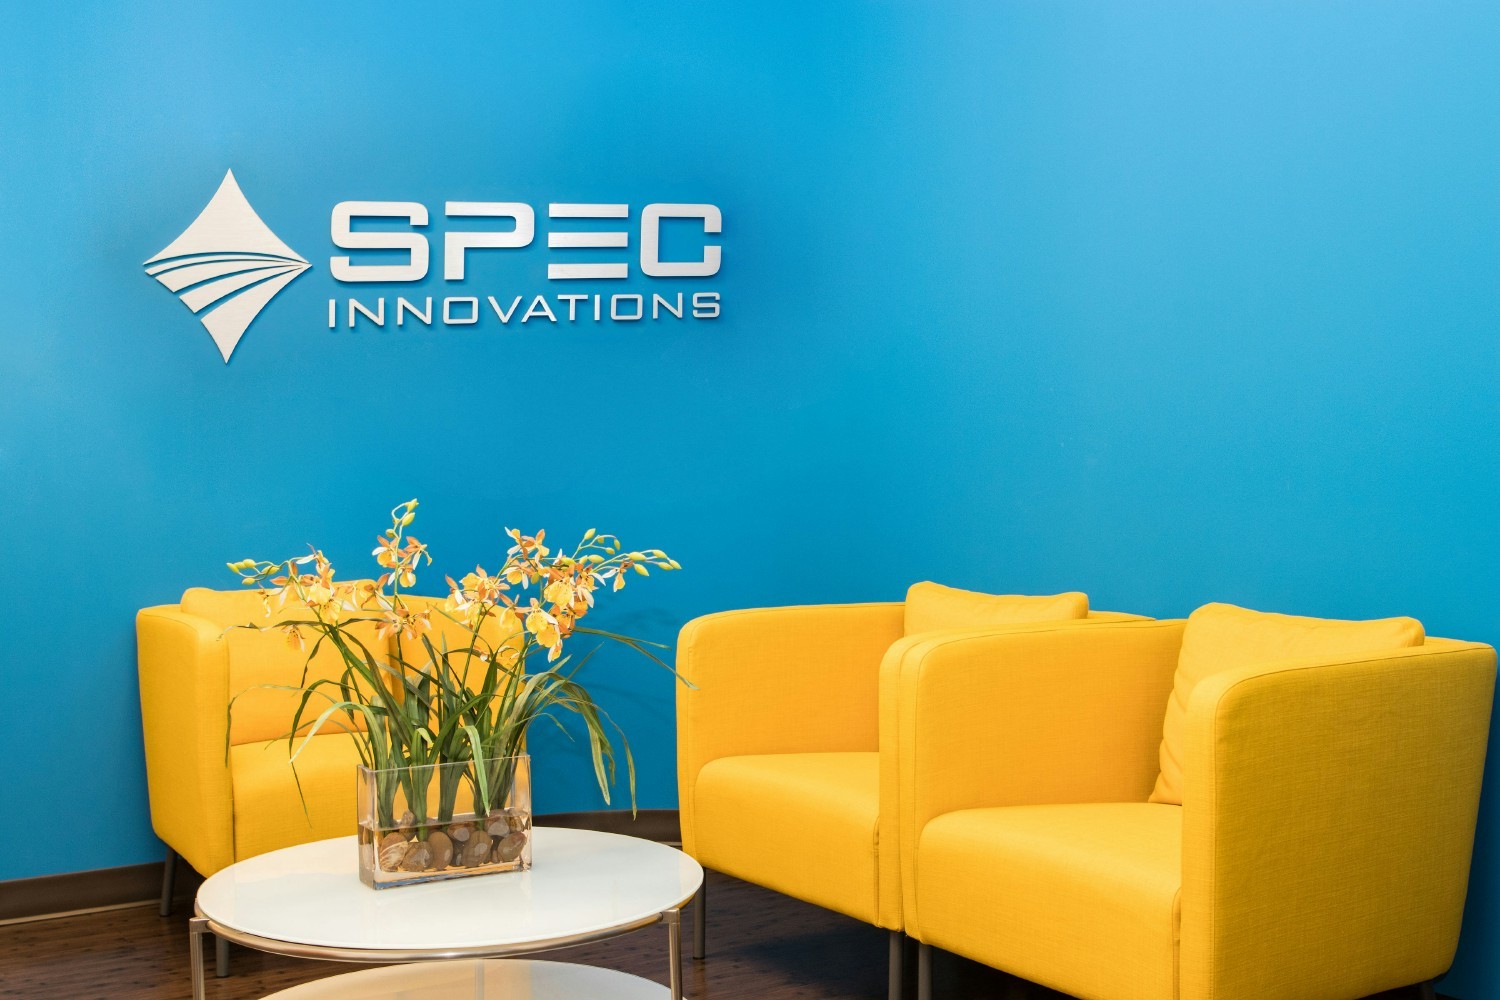 SPEC Innovations Office